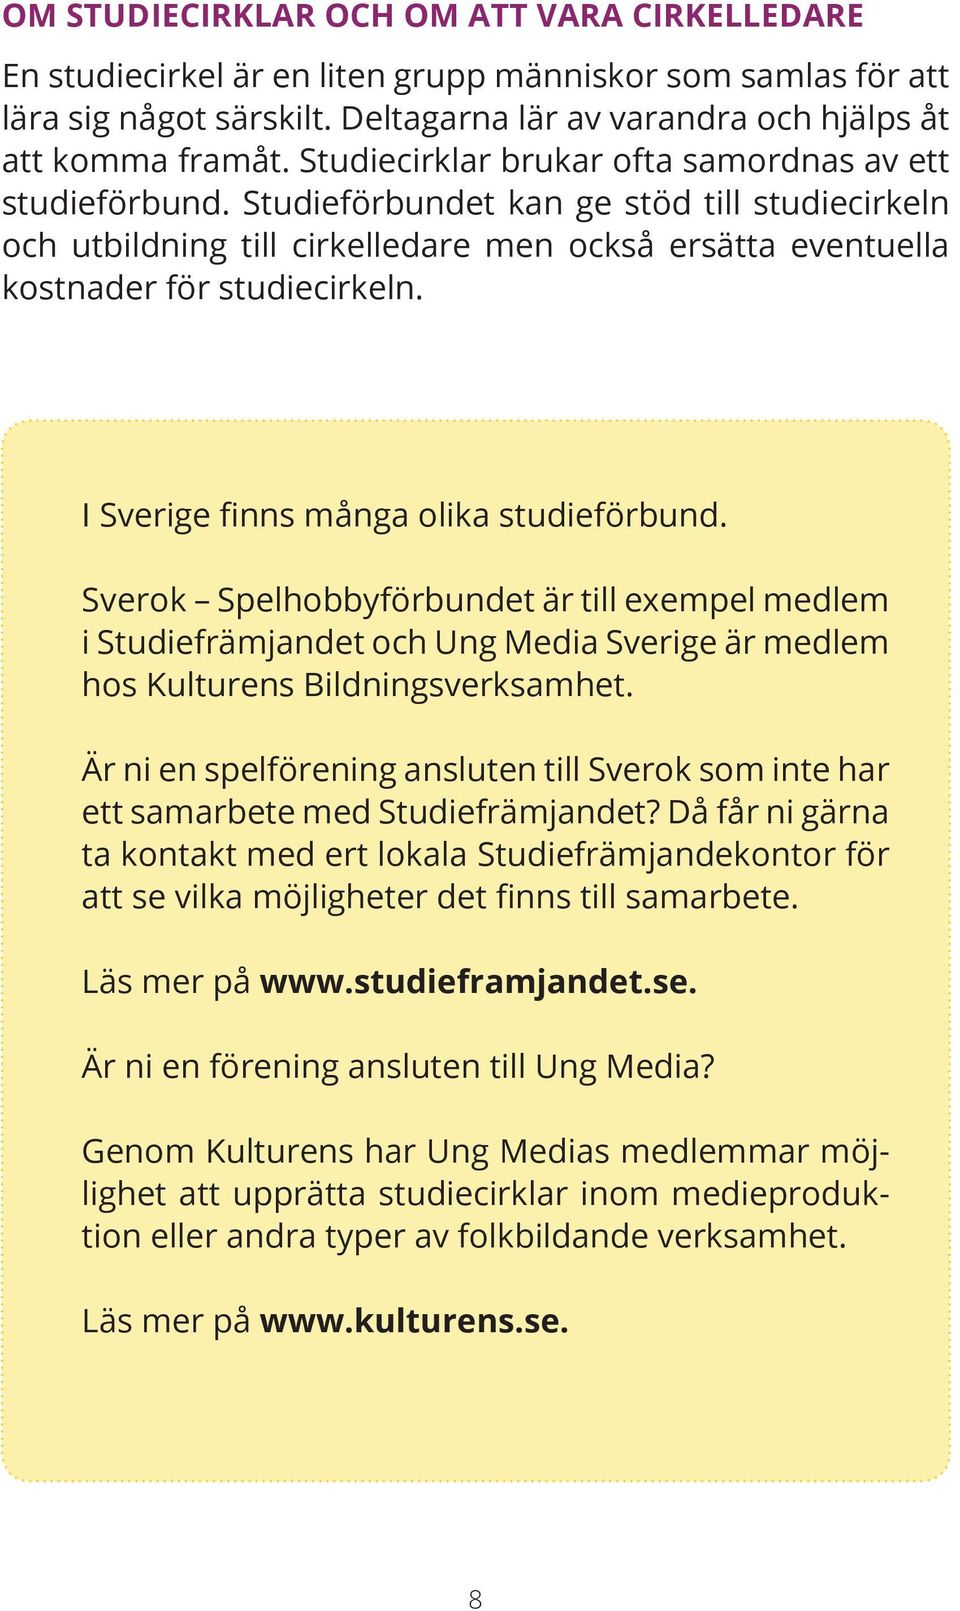 I Sverige finns många olika studieförbund. Sverok Spelhobbyförbundet är till exempel medlem i Studiefrämjandet och Ung Media Sverige är medlem hos Kulturens Bildningsverksamhet.